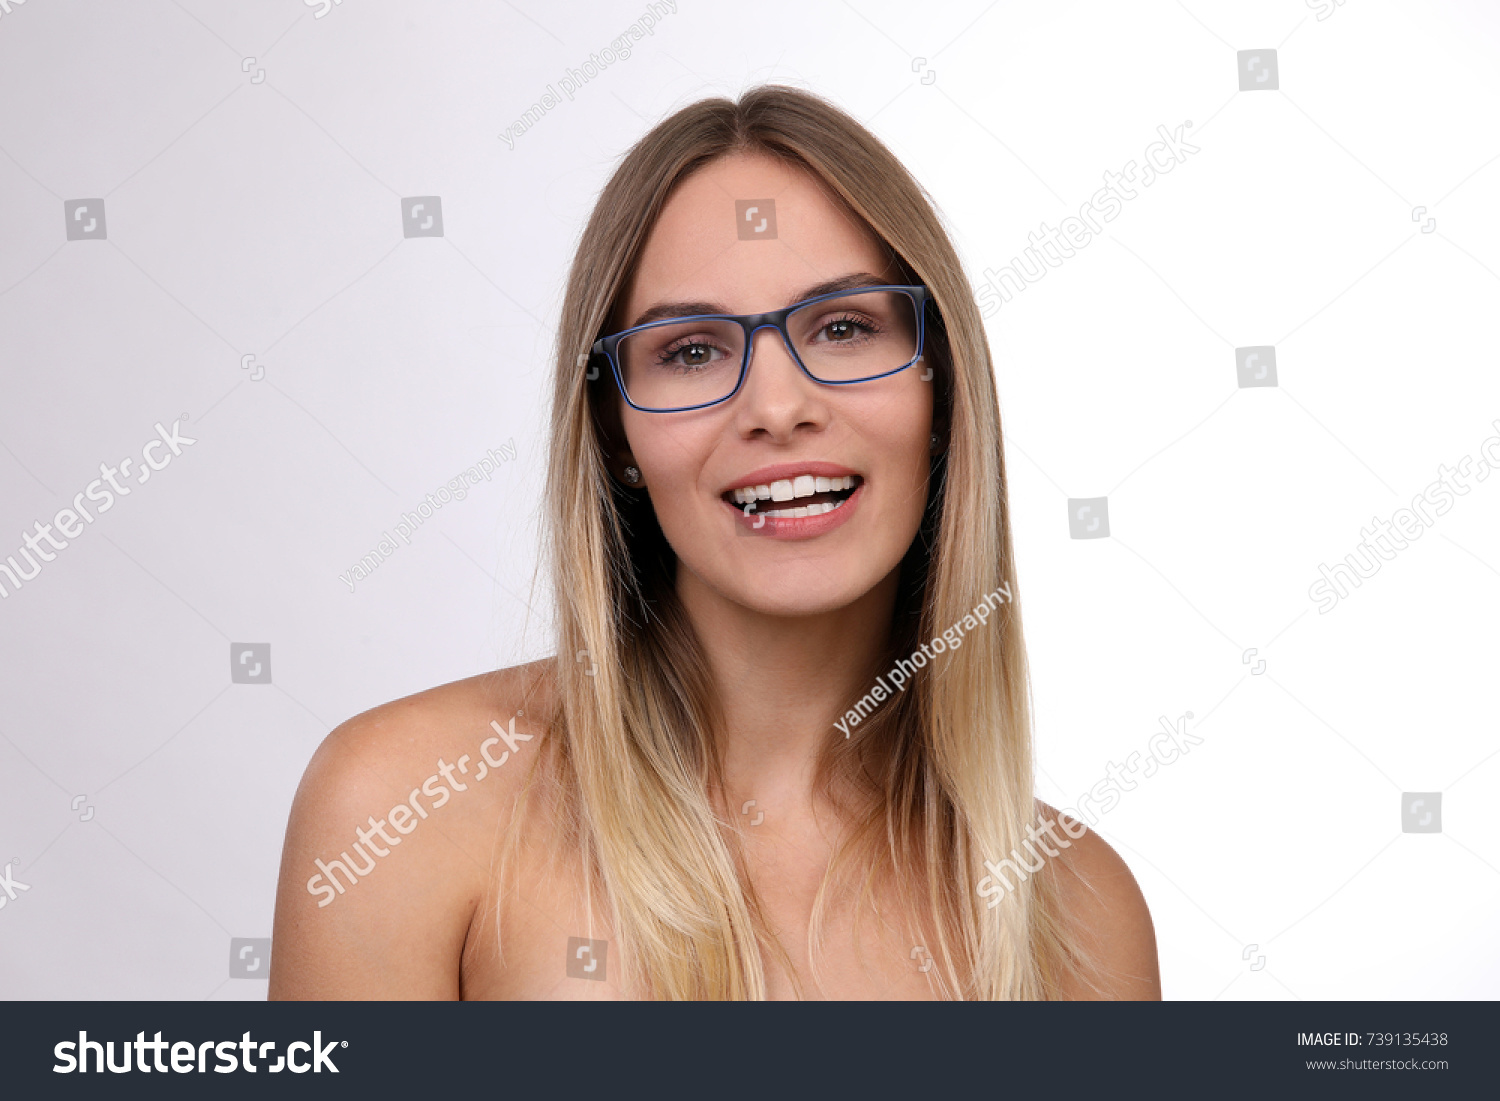 Naked Girl In Glasses